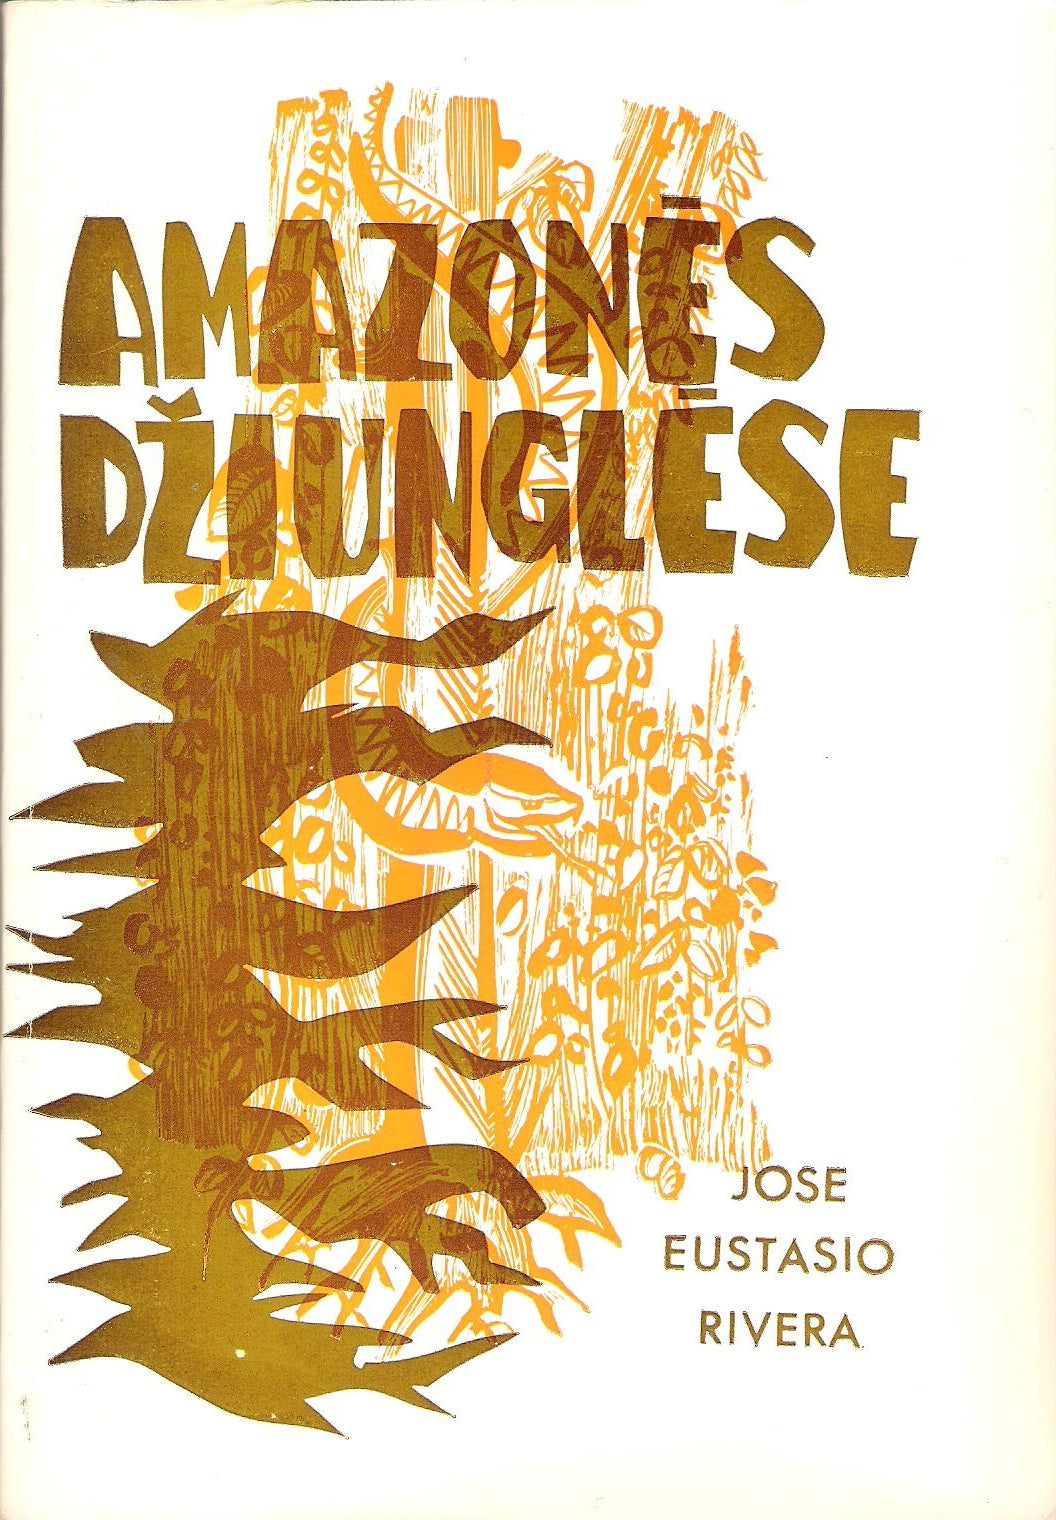 Jose Eustasio Rivera - Amazonės džiunglėse, Chicago, 1974